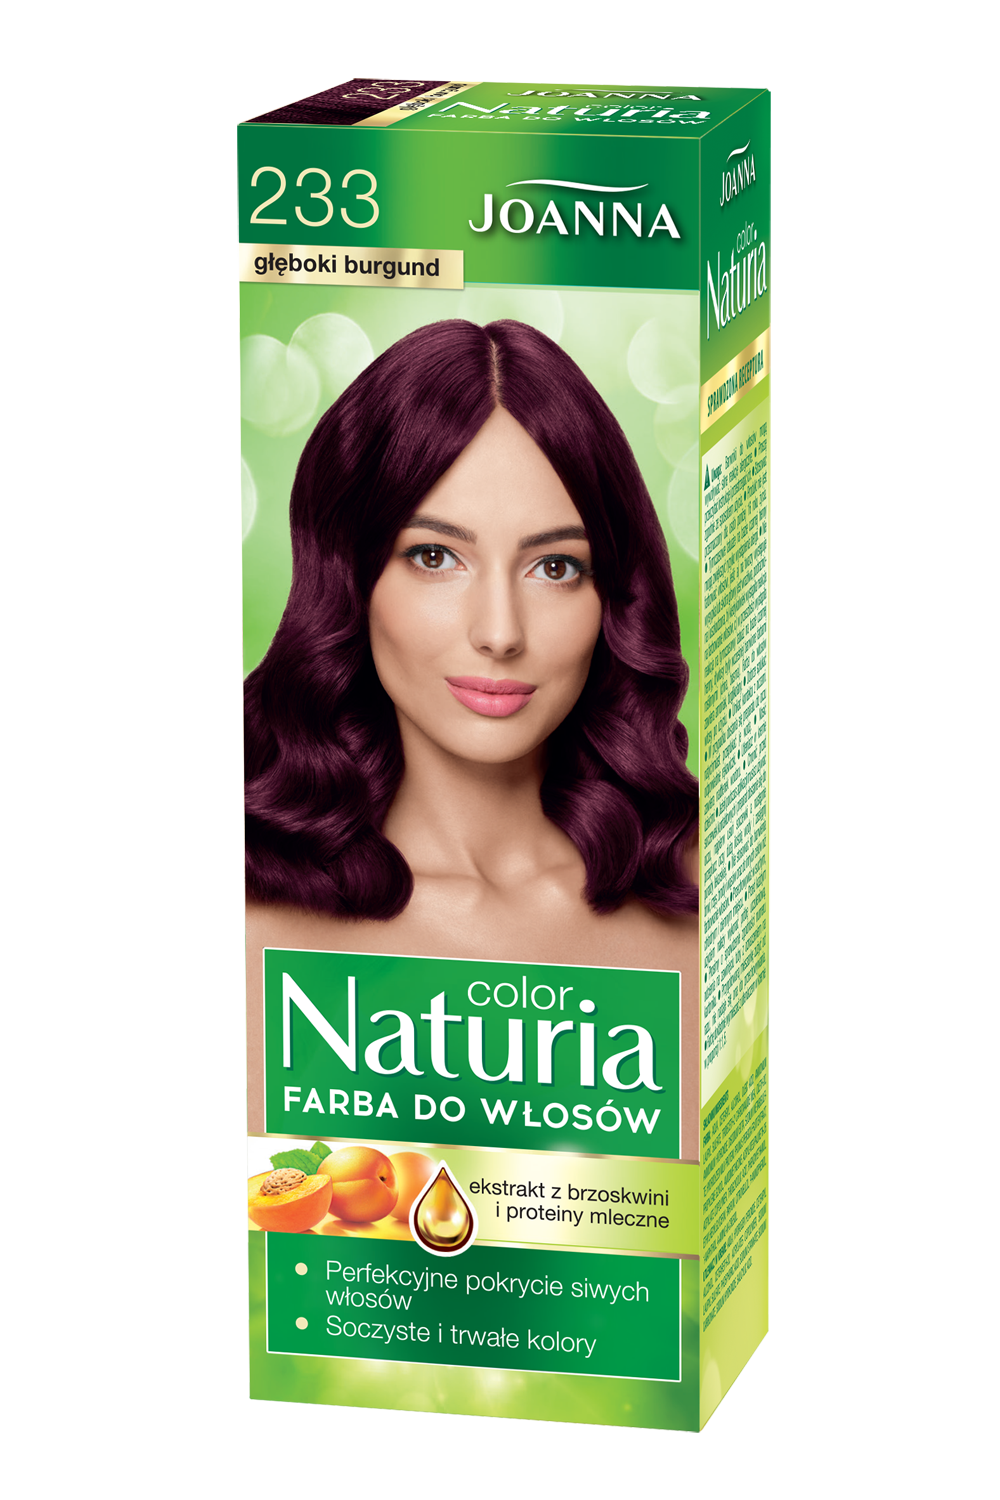 Farba do włosów Joanna Naturia Color w odcieniu nr 233 głęboki burgund